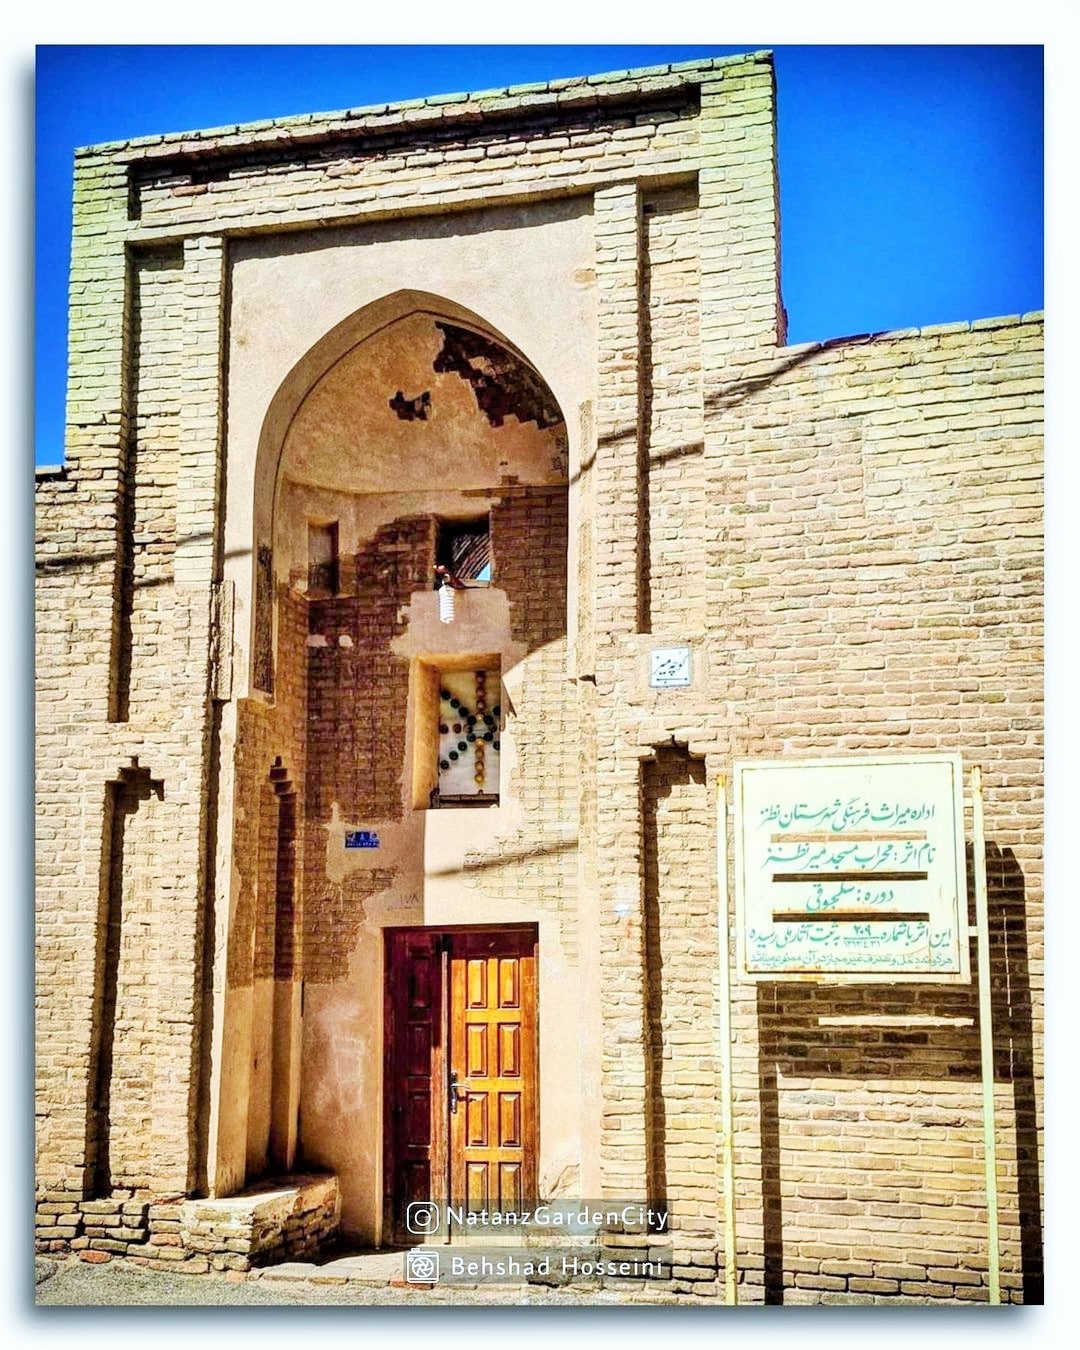 سردر ورودی مسجد میر نطنز